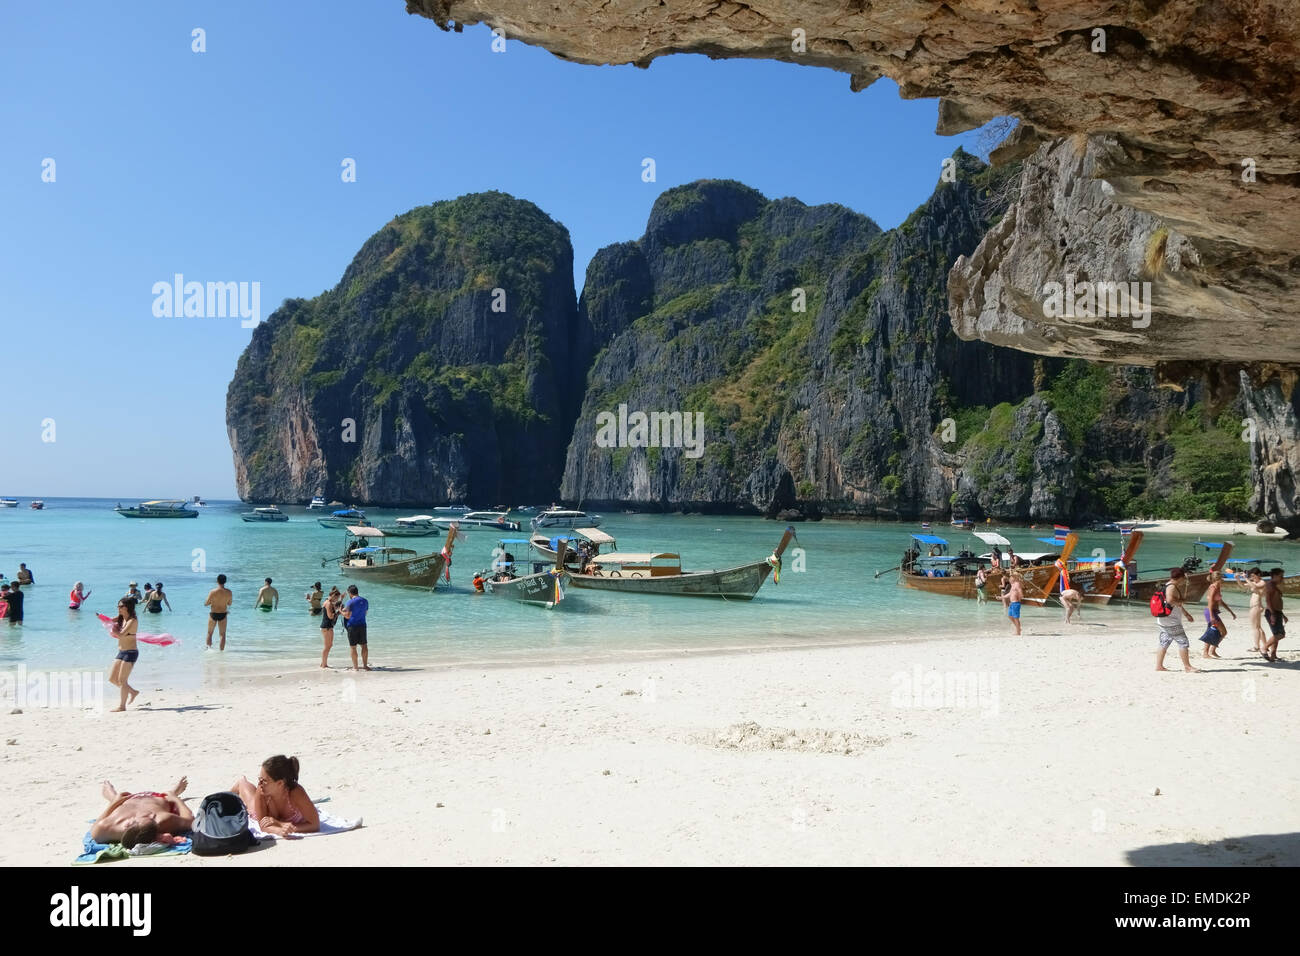 Bateaux, les touristes, le sable et la mer on Tropical Beach, Koh Phi Phi Leh, donnant sur la mer d'Andaman, la province de Krabi, Thaïlande, Banque D'Images